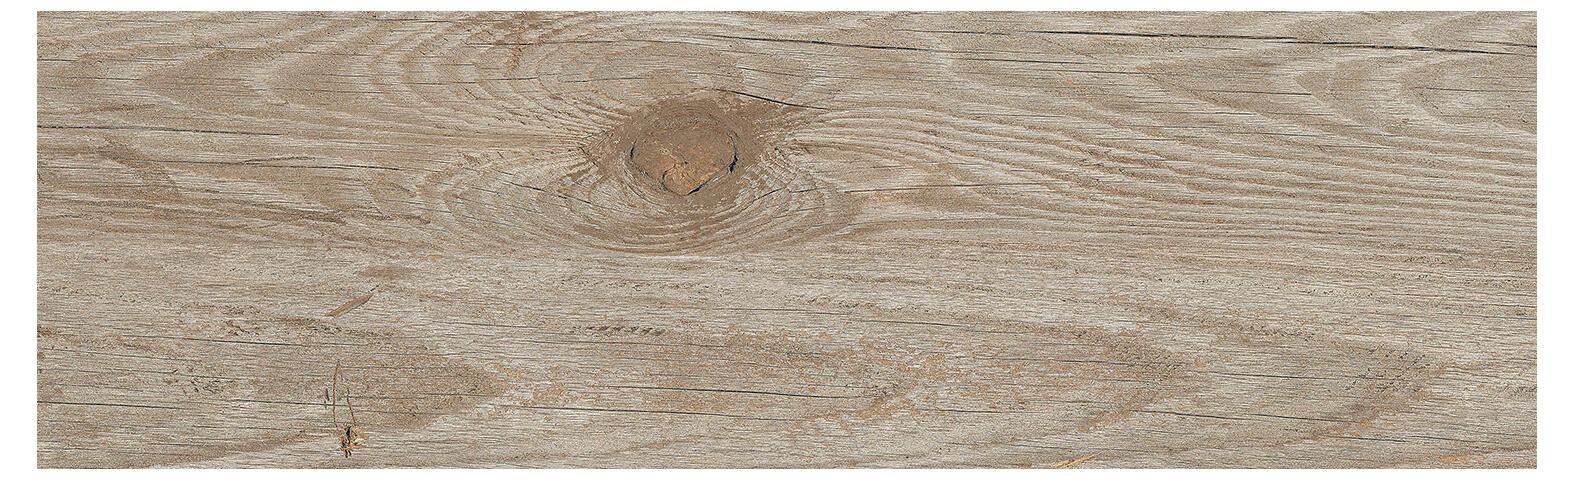 Suelo cerámico melbourne efecto madera gris 20.2x66.2 cm c1 artens